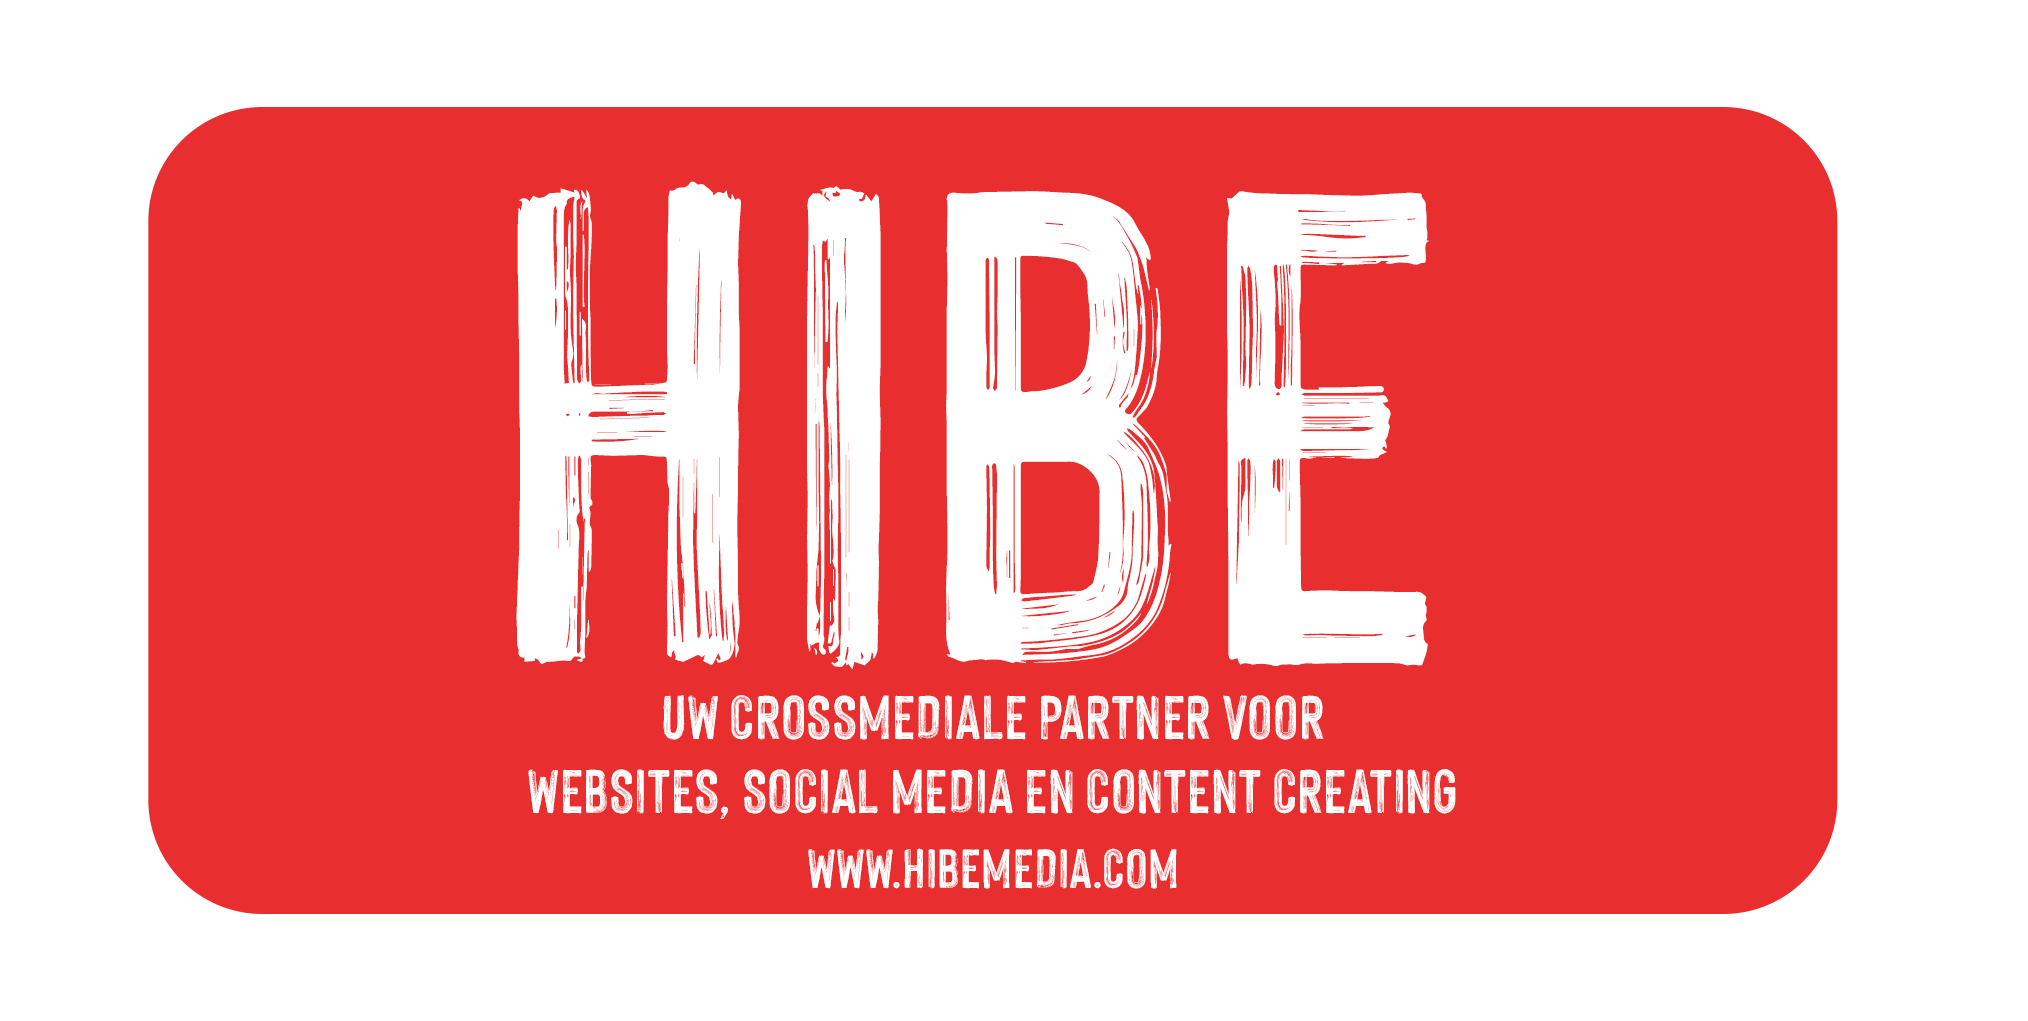 Content Creation, Websites en Social Media